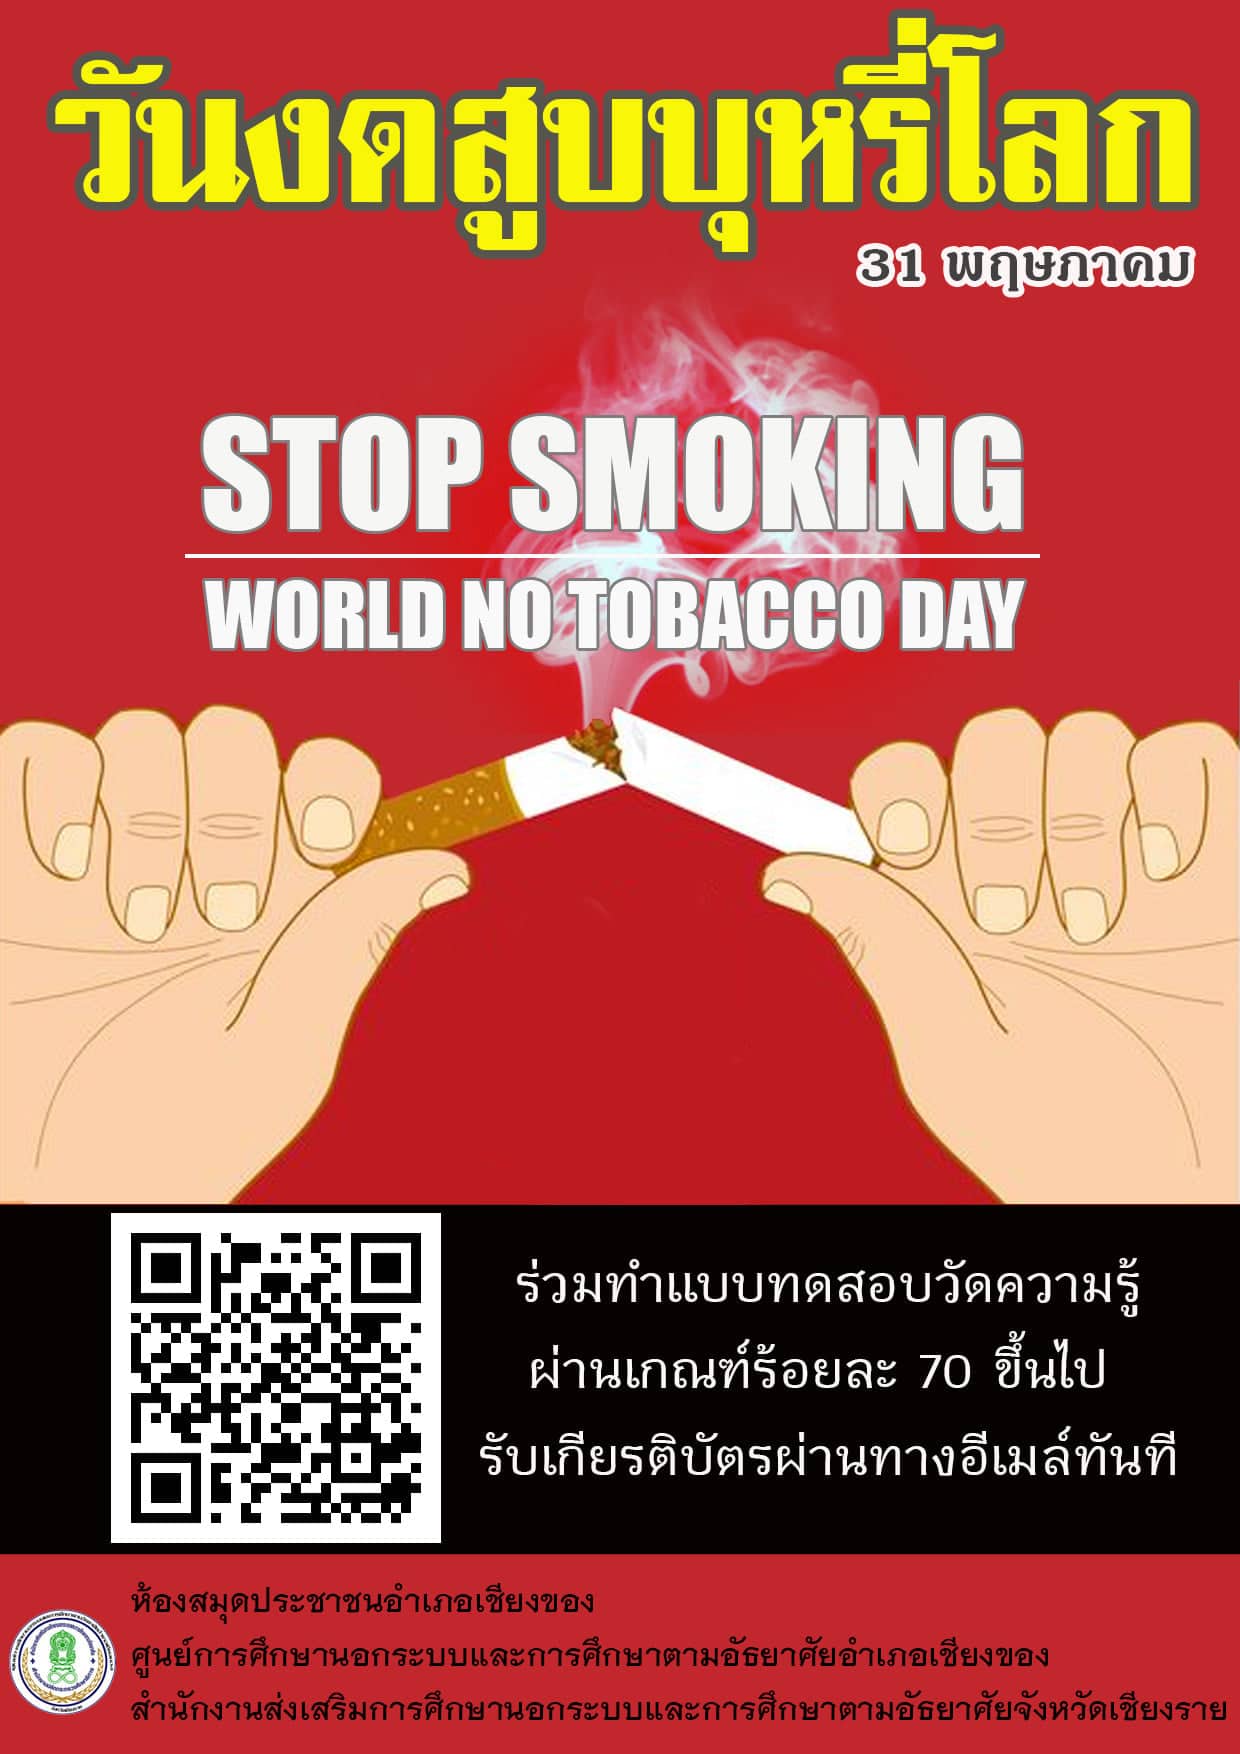 แบบทดสอบออนไลน์ เรื่อง วันงดสูบบุหรี่โลก ผ่านเกณฑ์ร้อยละ 70 ขึ้นไป รับเกียรติบัตรผ่านอีเมล์ทันที โดยห้องสมุดประชาชนอำเภอเชียงของ